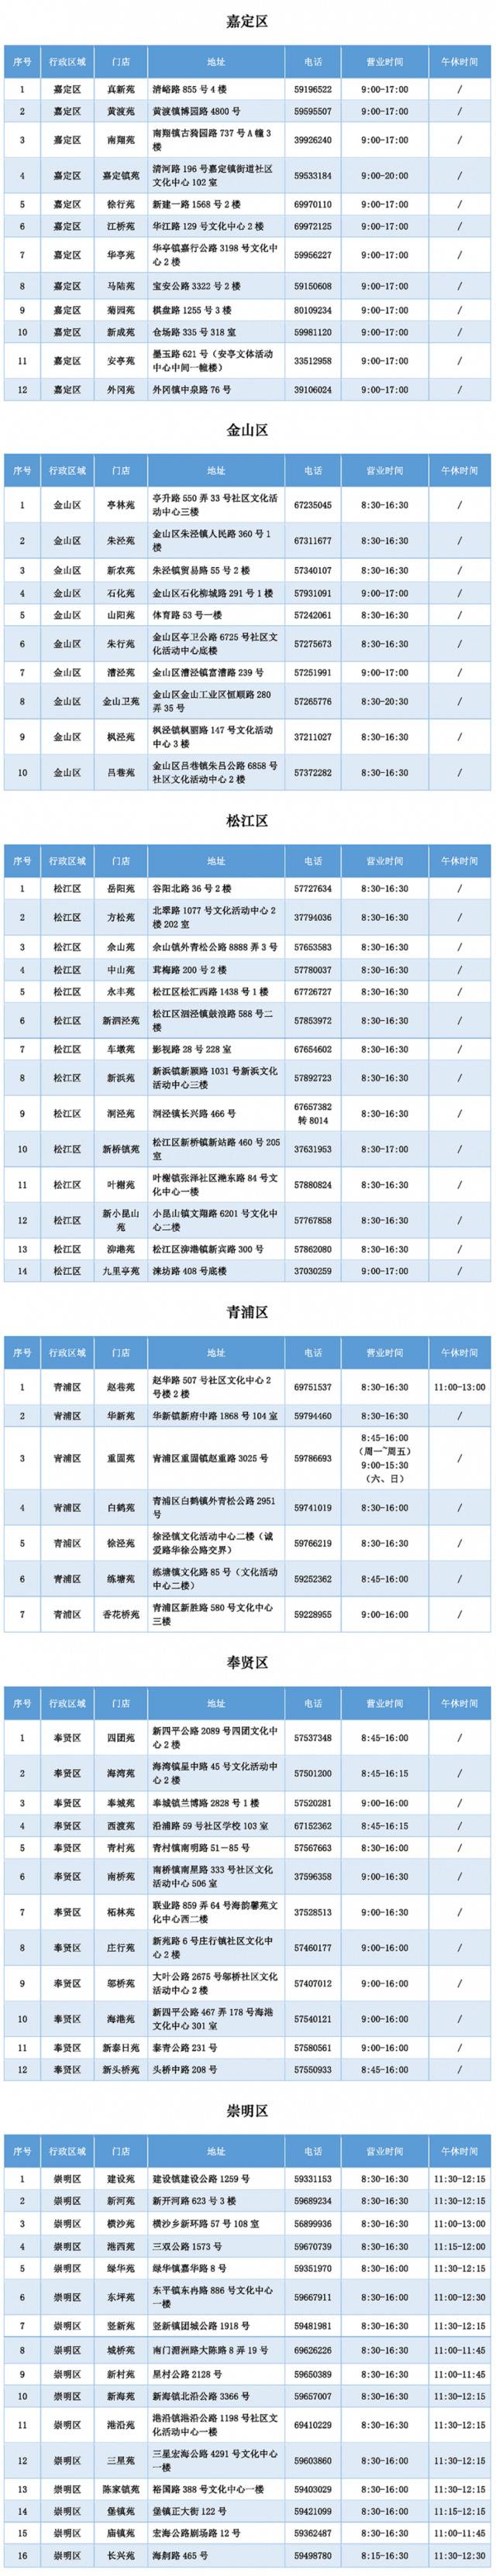 上海适龄幼儿入园工作通知今日公布 先登记后报名